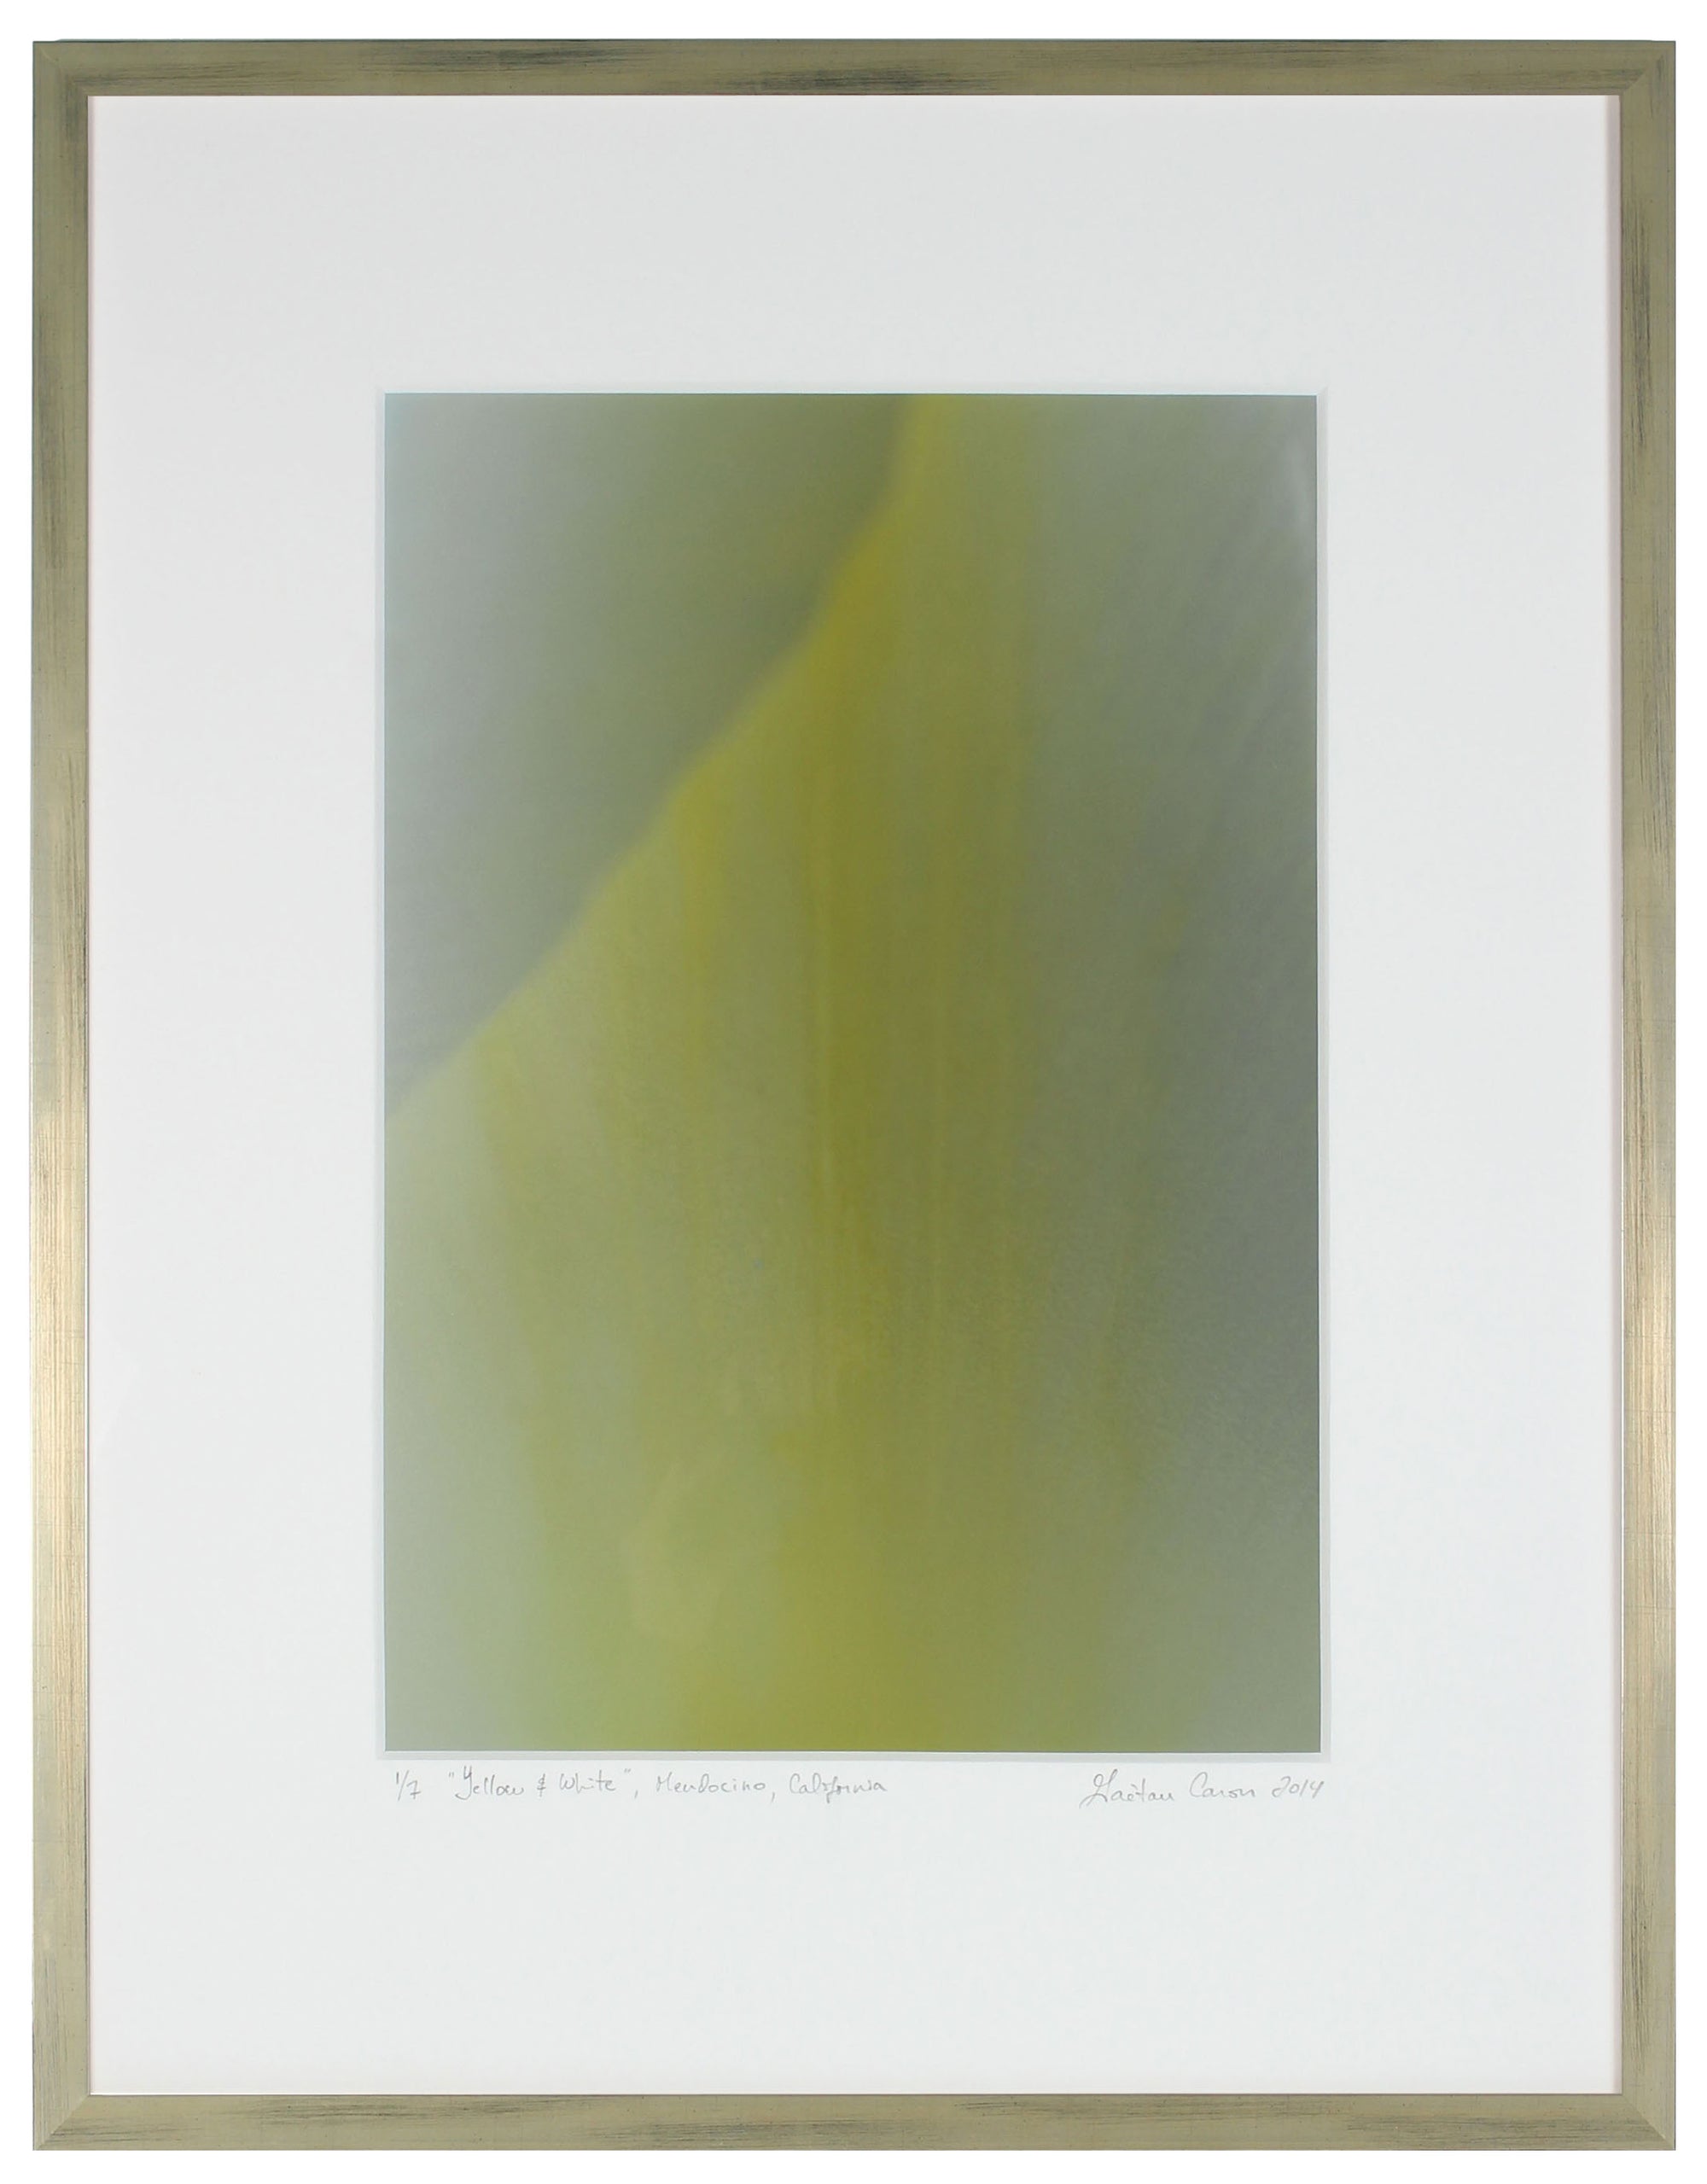 <I>Yellow & White (Tulip)</I><br>Mendocino, California, 2014<br><br>GC0383